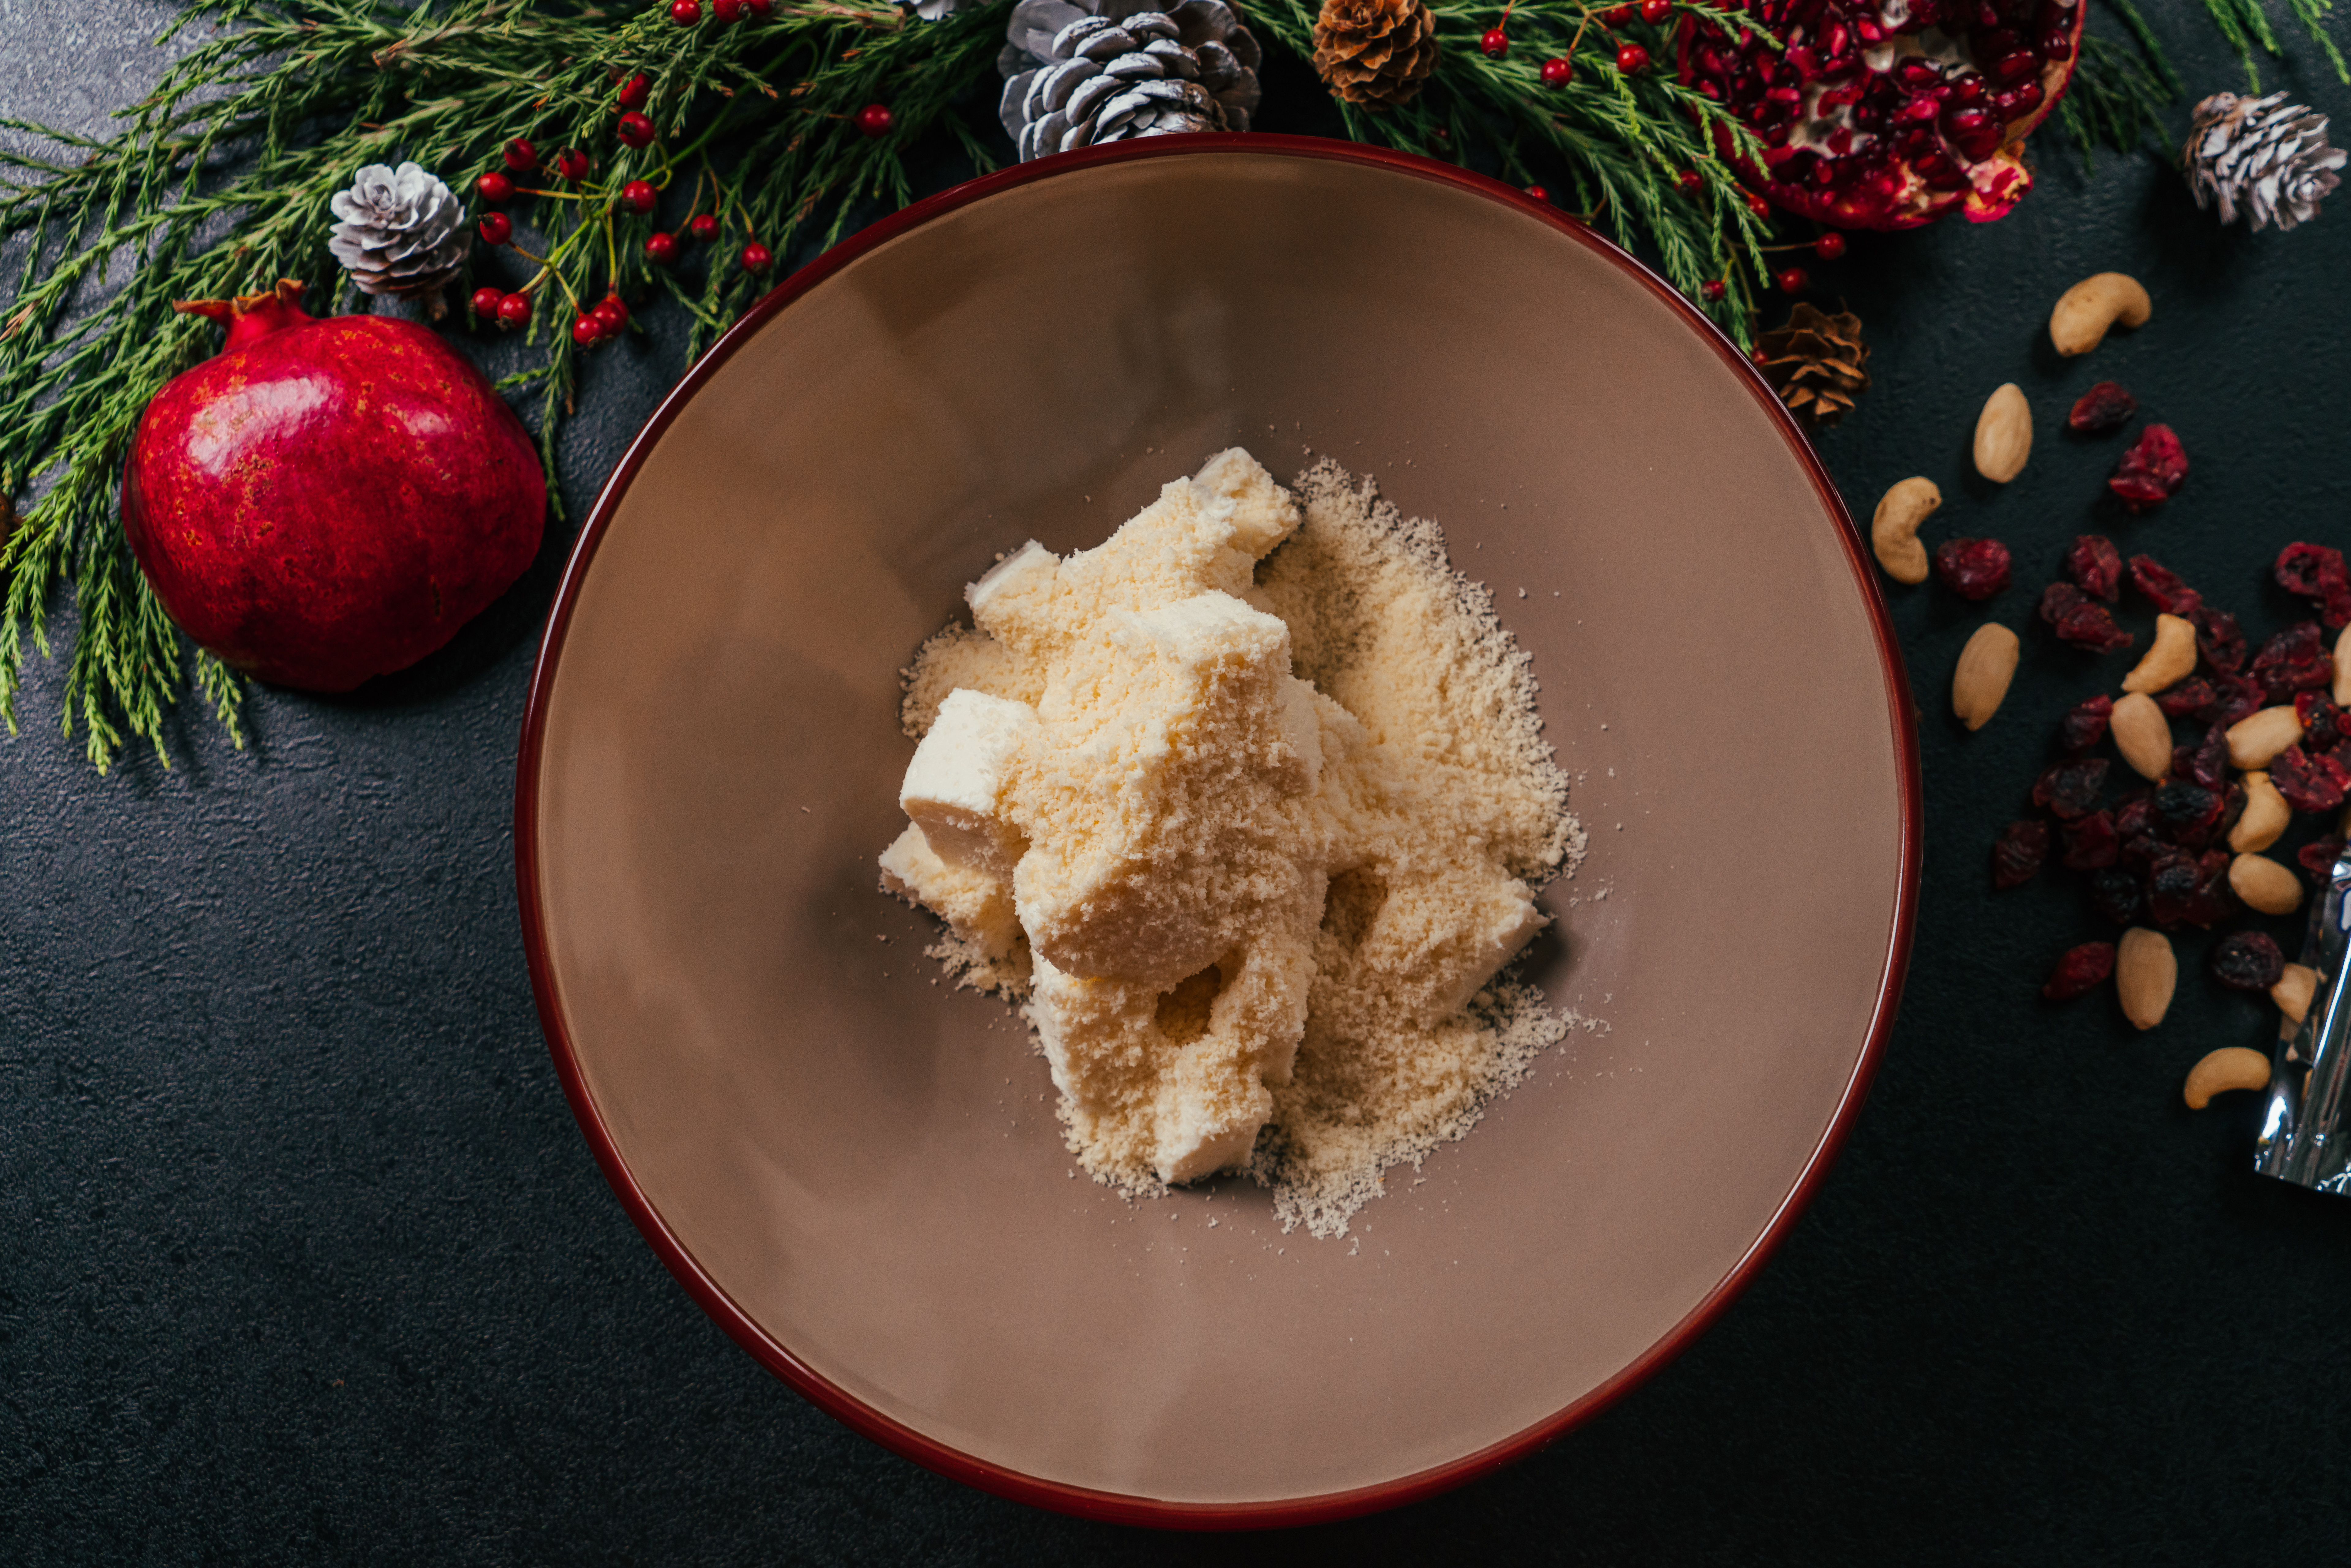 pasos para hacer bolas navideñas de quesos sumergidas en pistachos, arándanos secos y perejil, entrantes para navidad paso a paso 